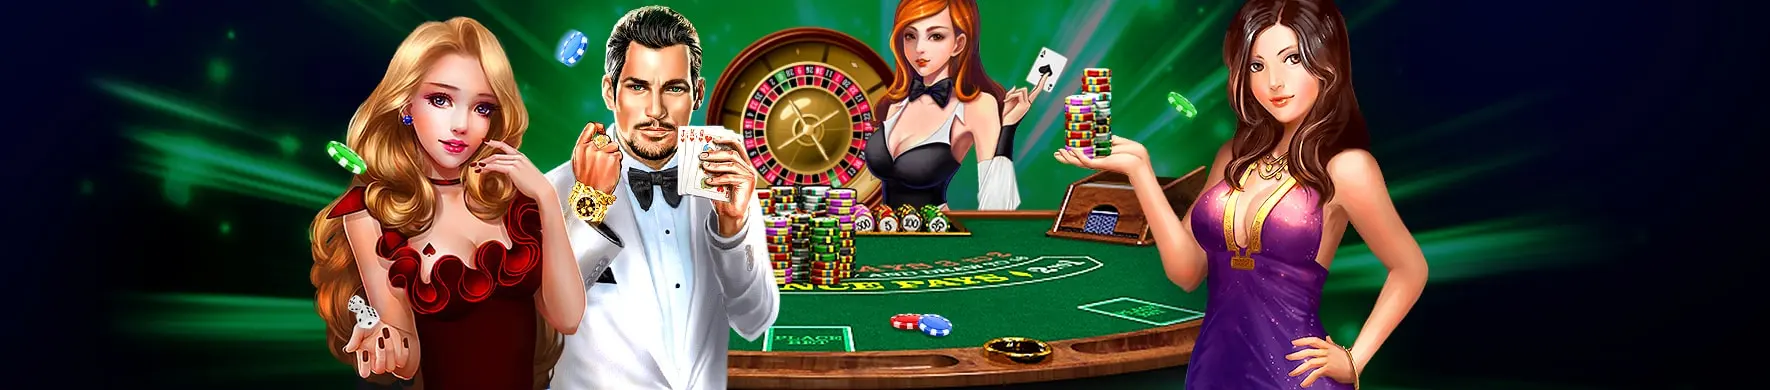 Playamo casino backgorund